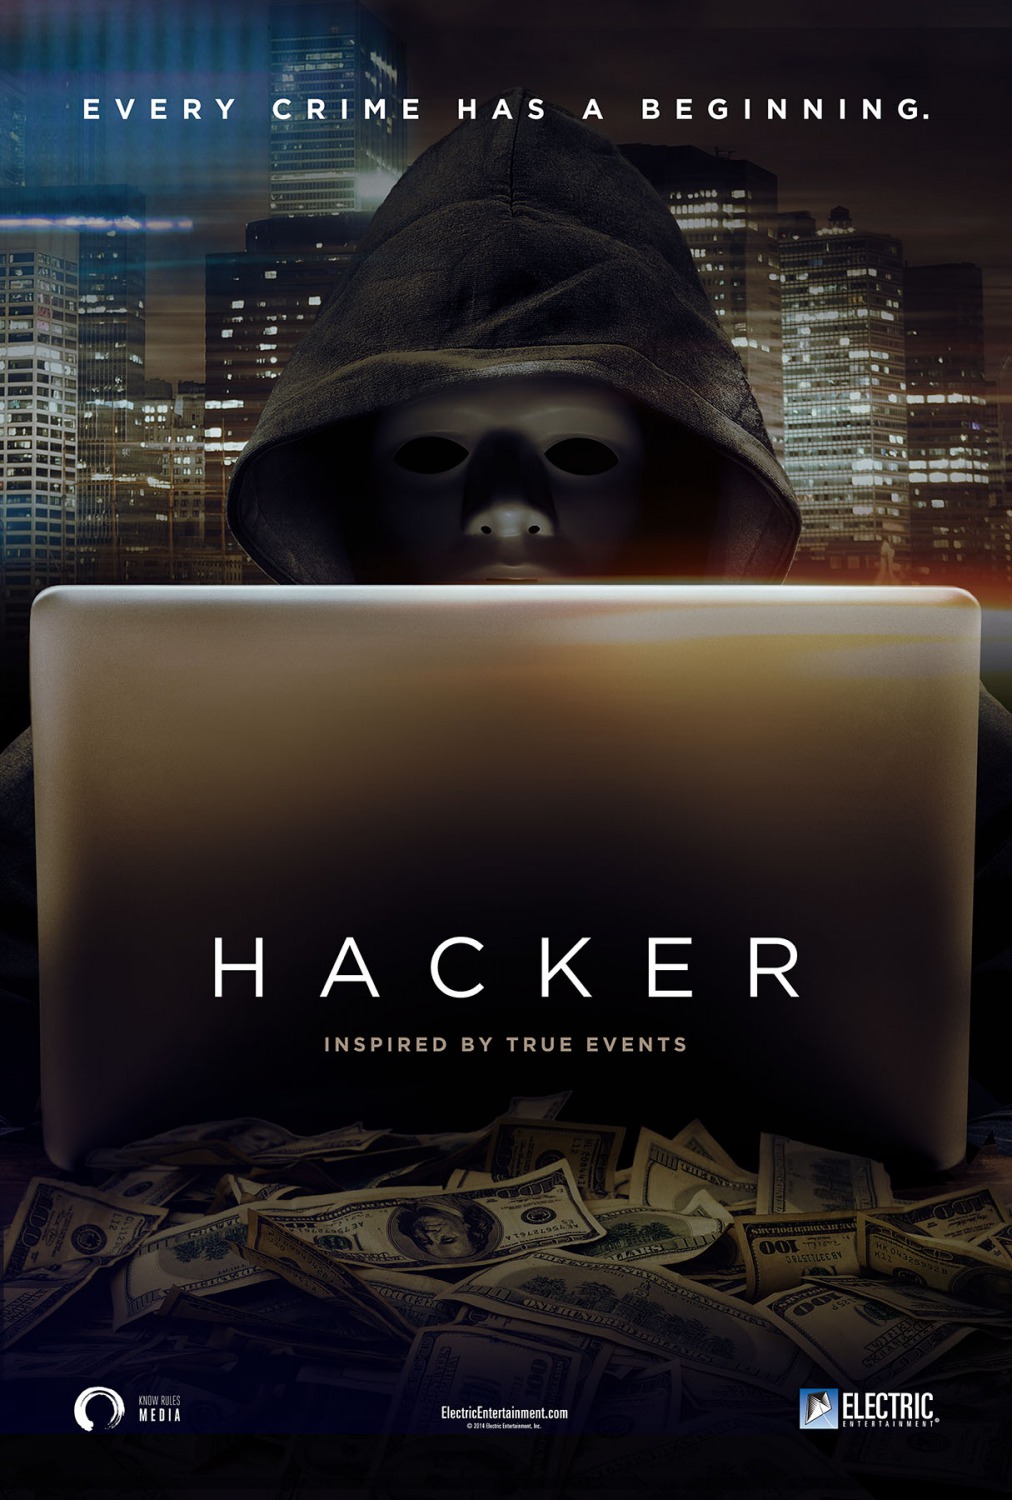 The new hackers 2011 Монгол хэлээр